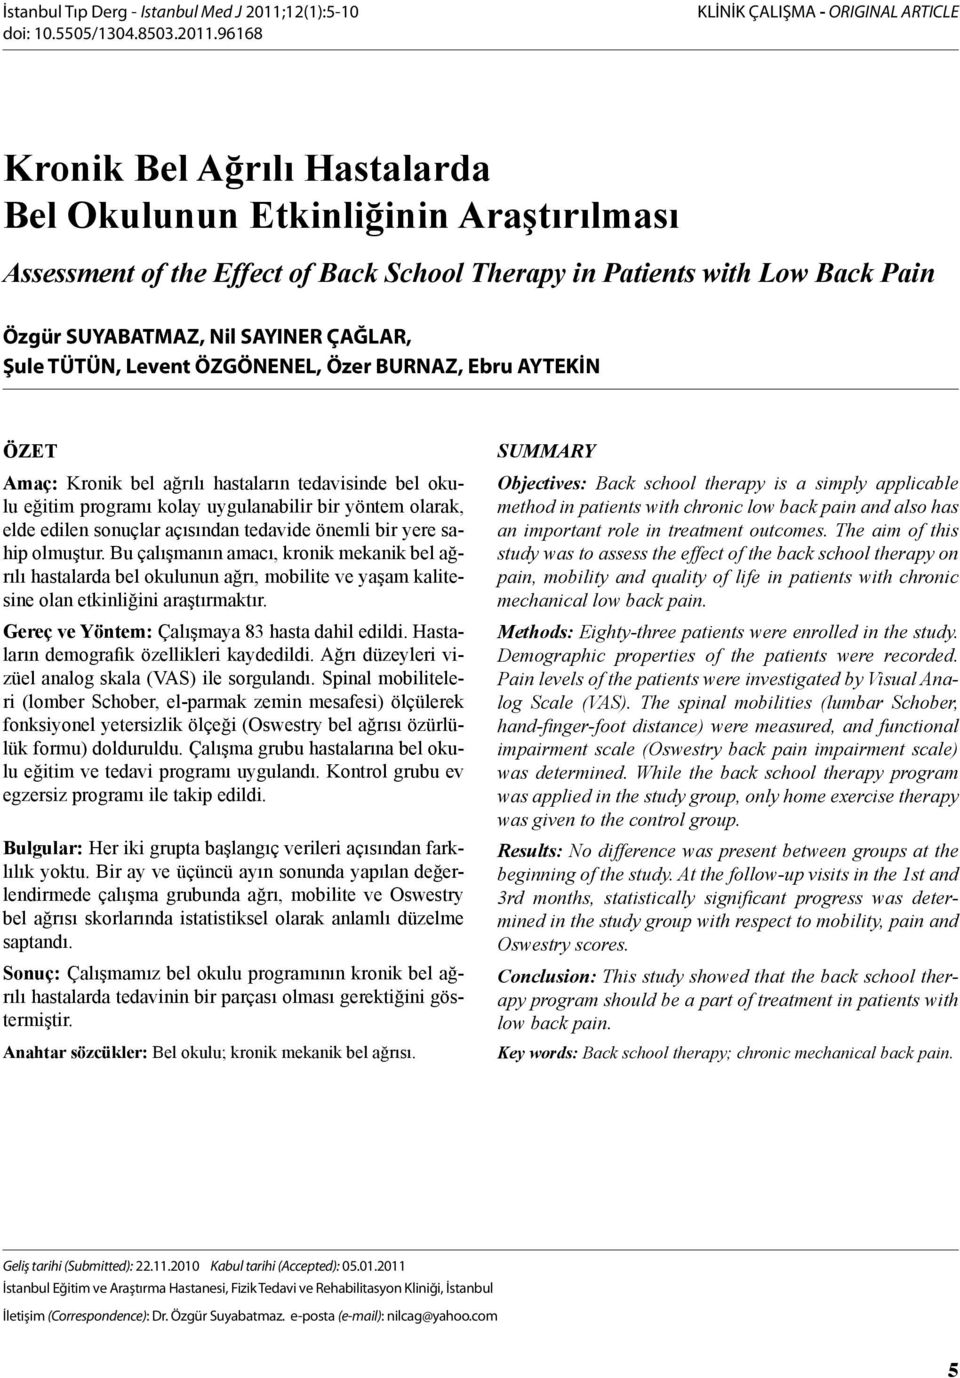 96168 KLİNİK ÇALIŞMA - ORIGINAL ARTICLE Kronik Bel Ağrılı Hastalarda Bel Okulunun Etkinliğinin Araştırılması Assessment of the Effect of Back School Therapy in Patients with Low Back Pain Özgür